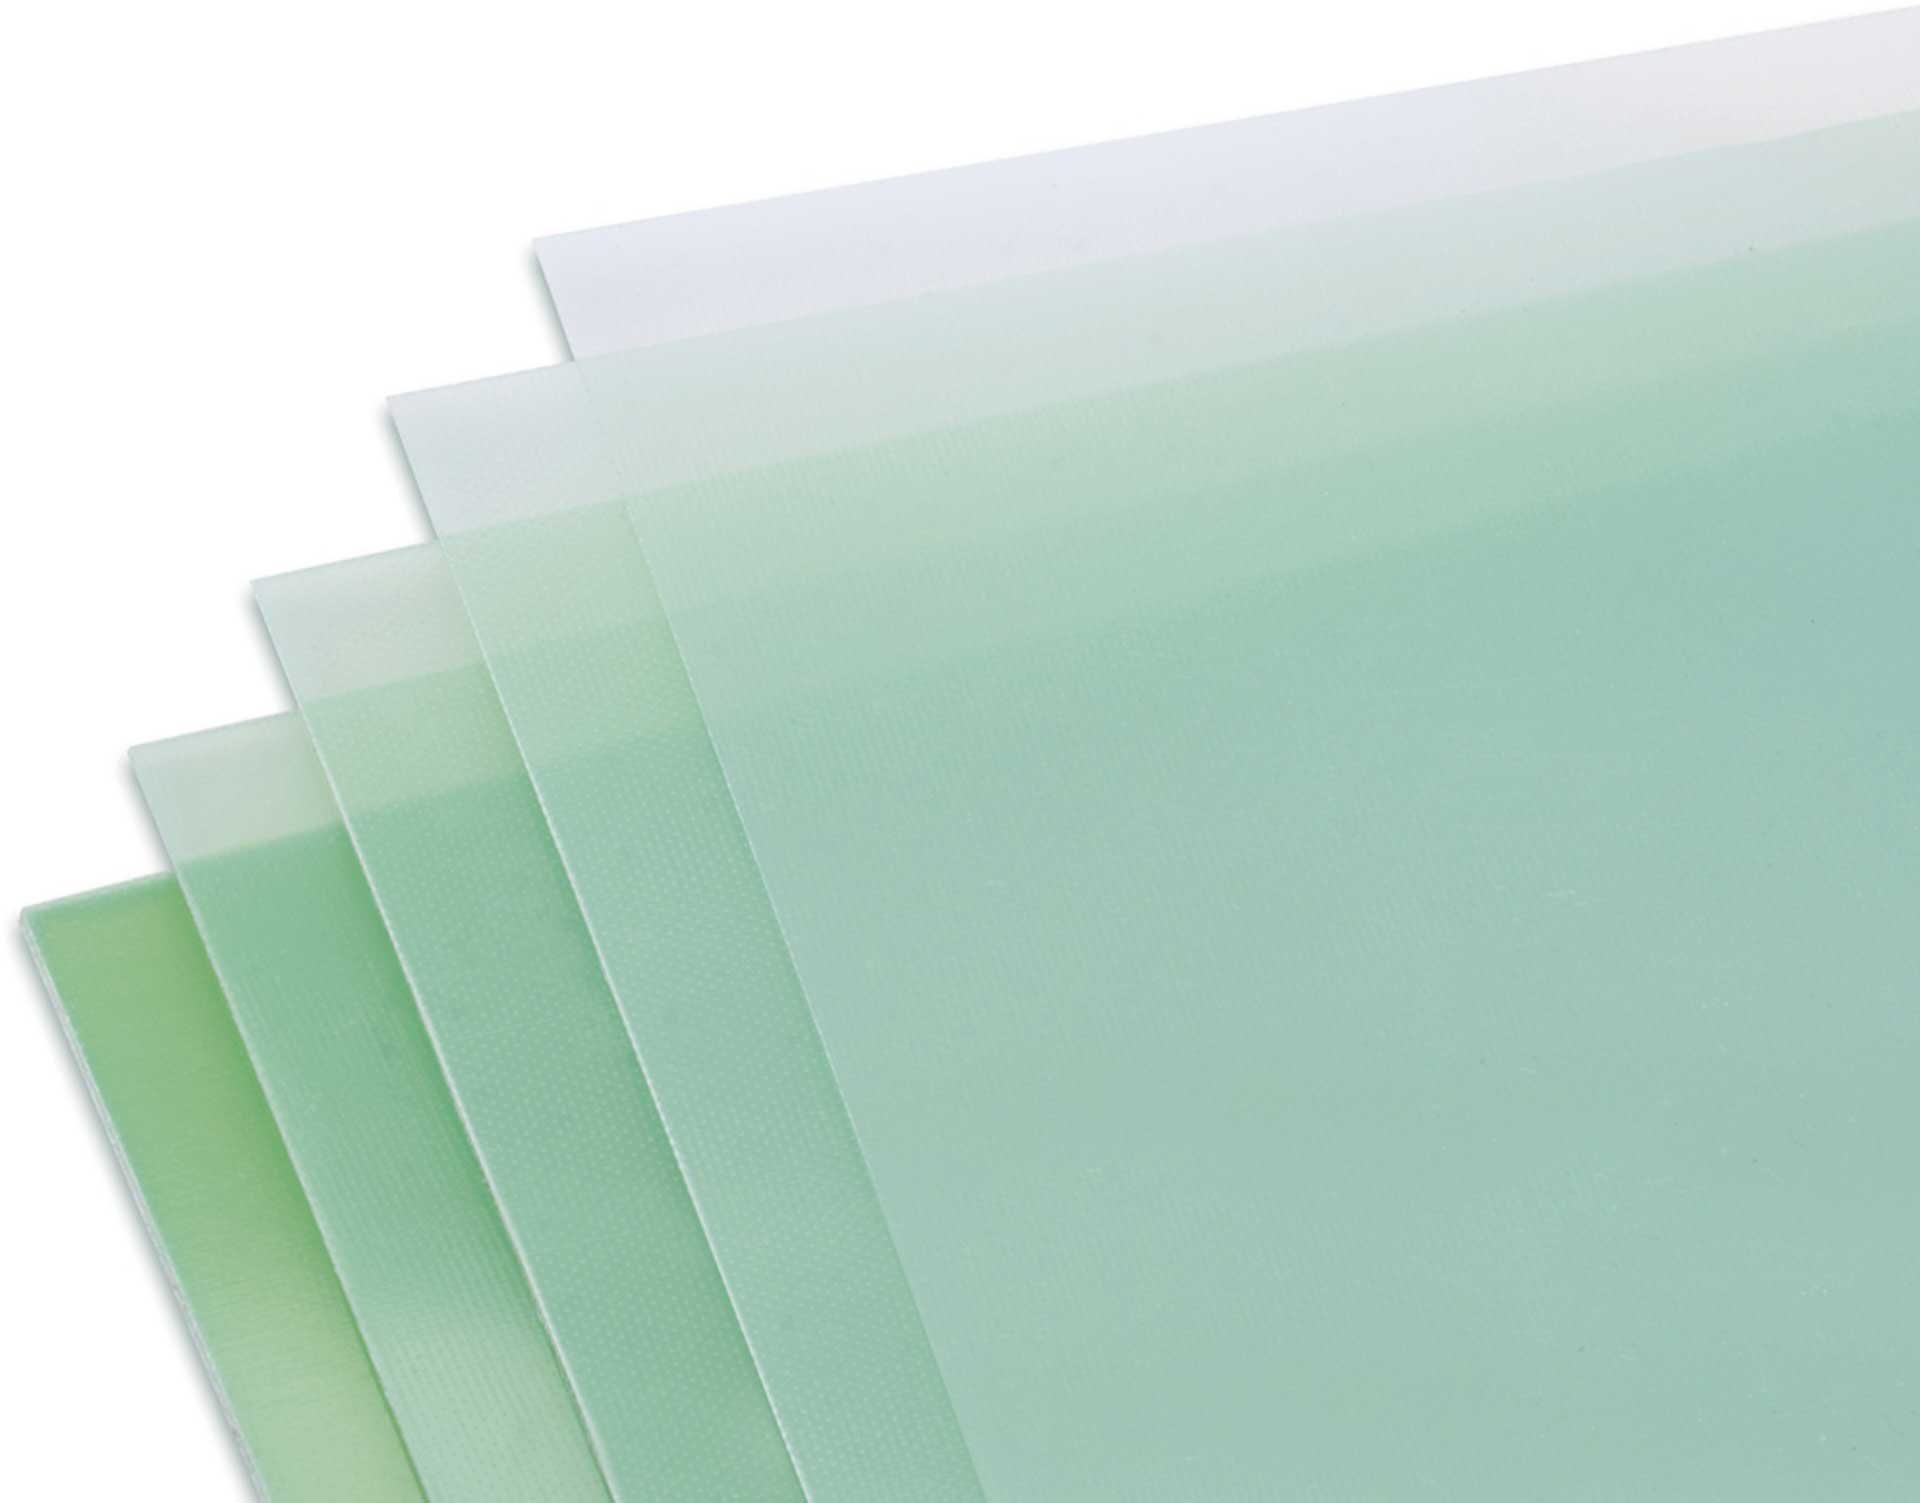 Modellbau Lindinger GFK-Platte 1,0x610x340m matt, grünlich transparent